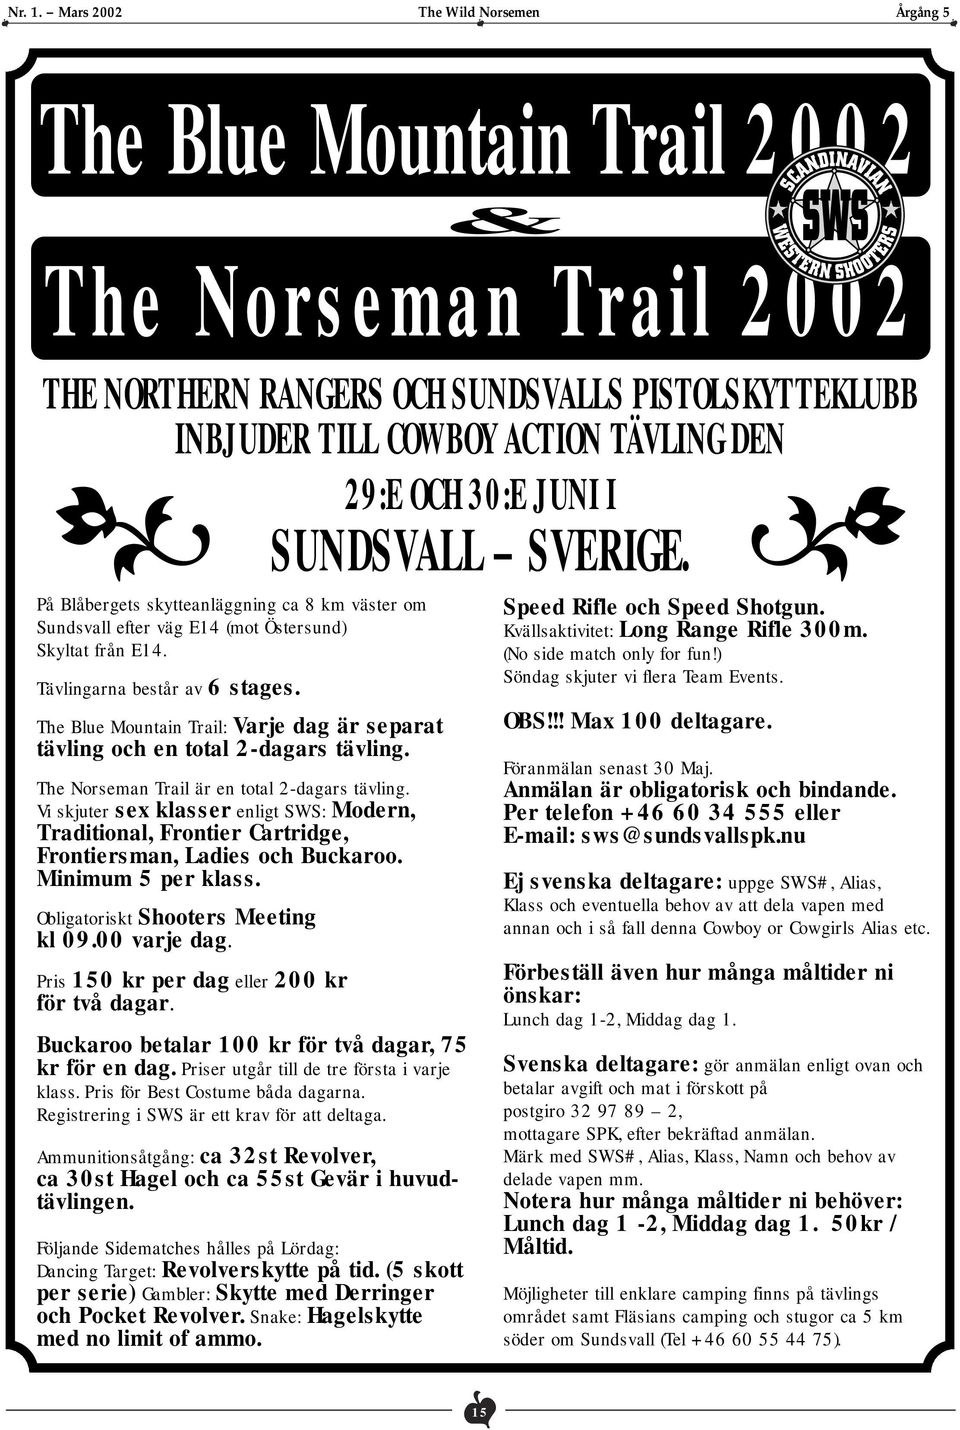 The Blue Mountain Trail: Varje dag är separat tävling och en total 2-dagars tävling. The Norseman Trail är en total 2-dagars tävling.